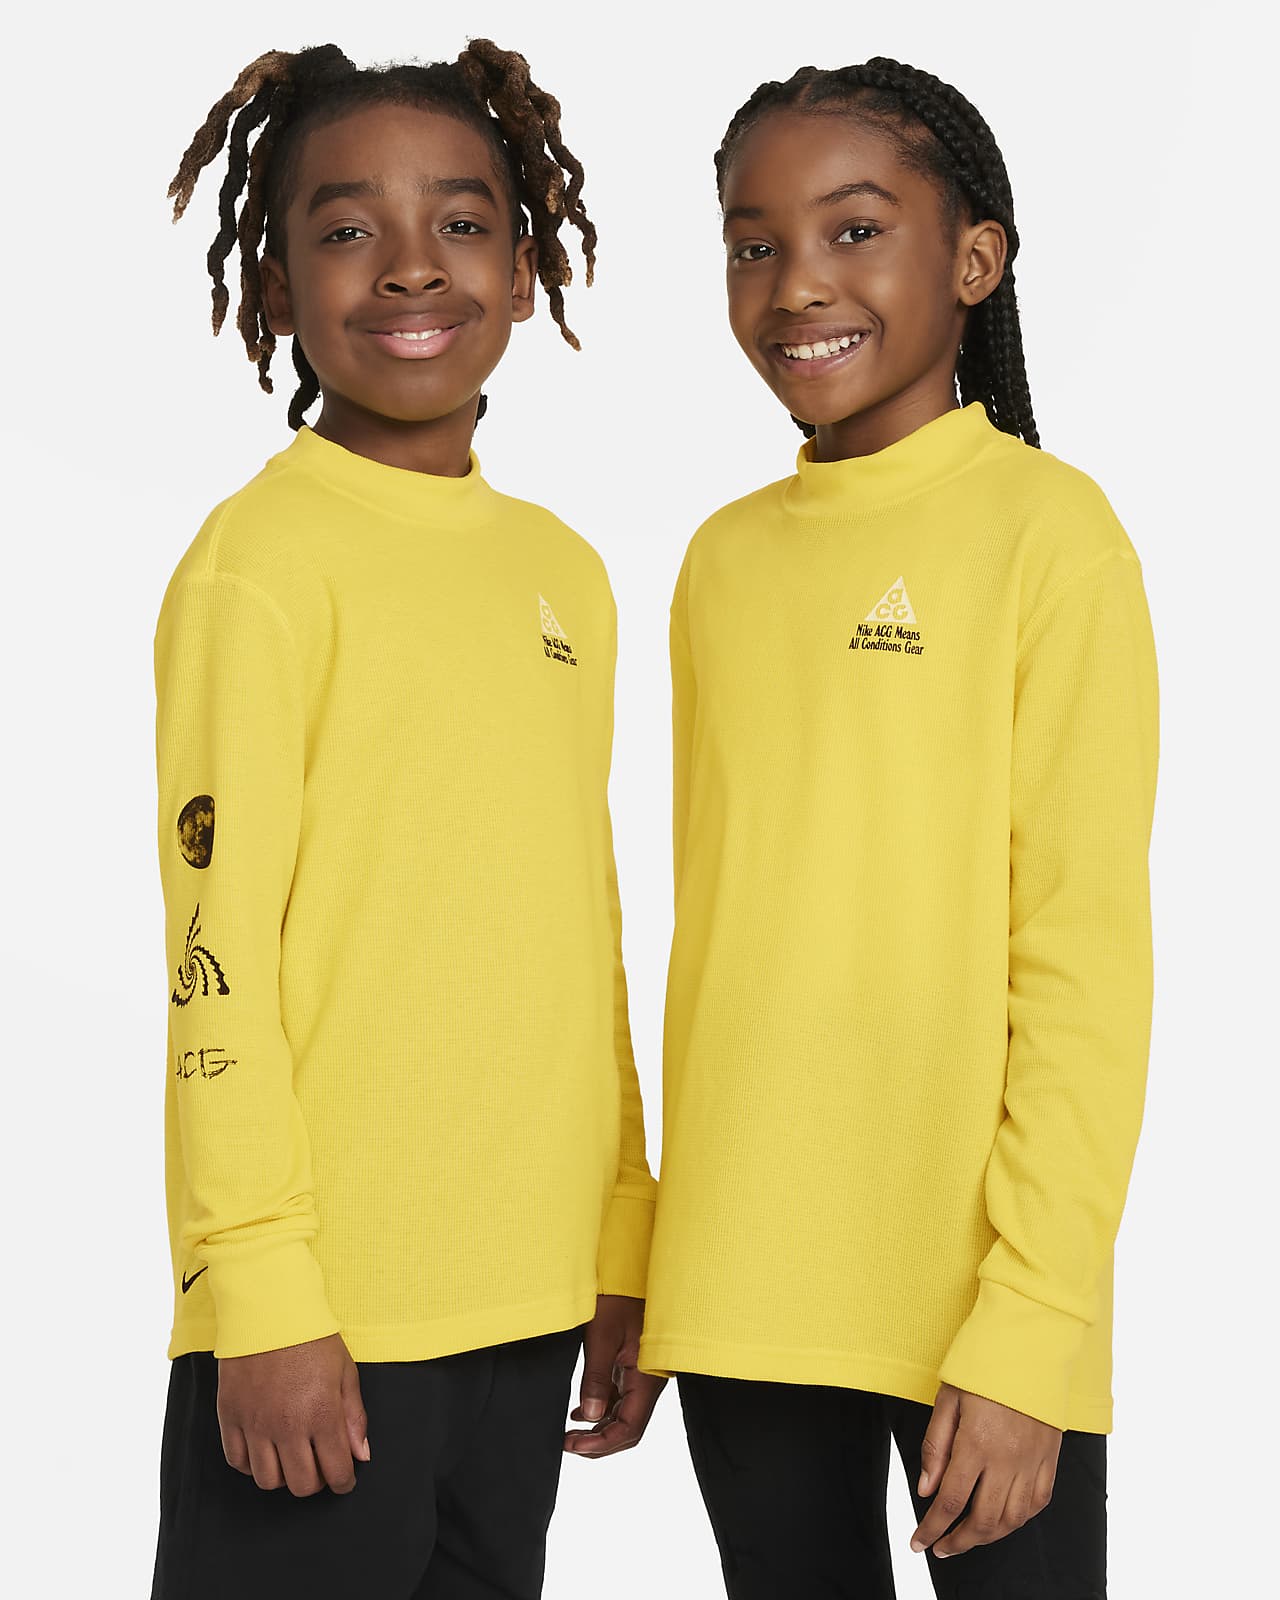 Volné tričko Nike ACG s dlouhým rukávem a vaflovou strukturou pro větší děti